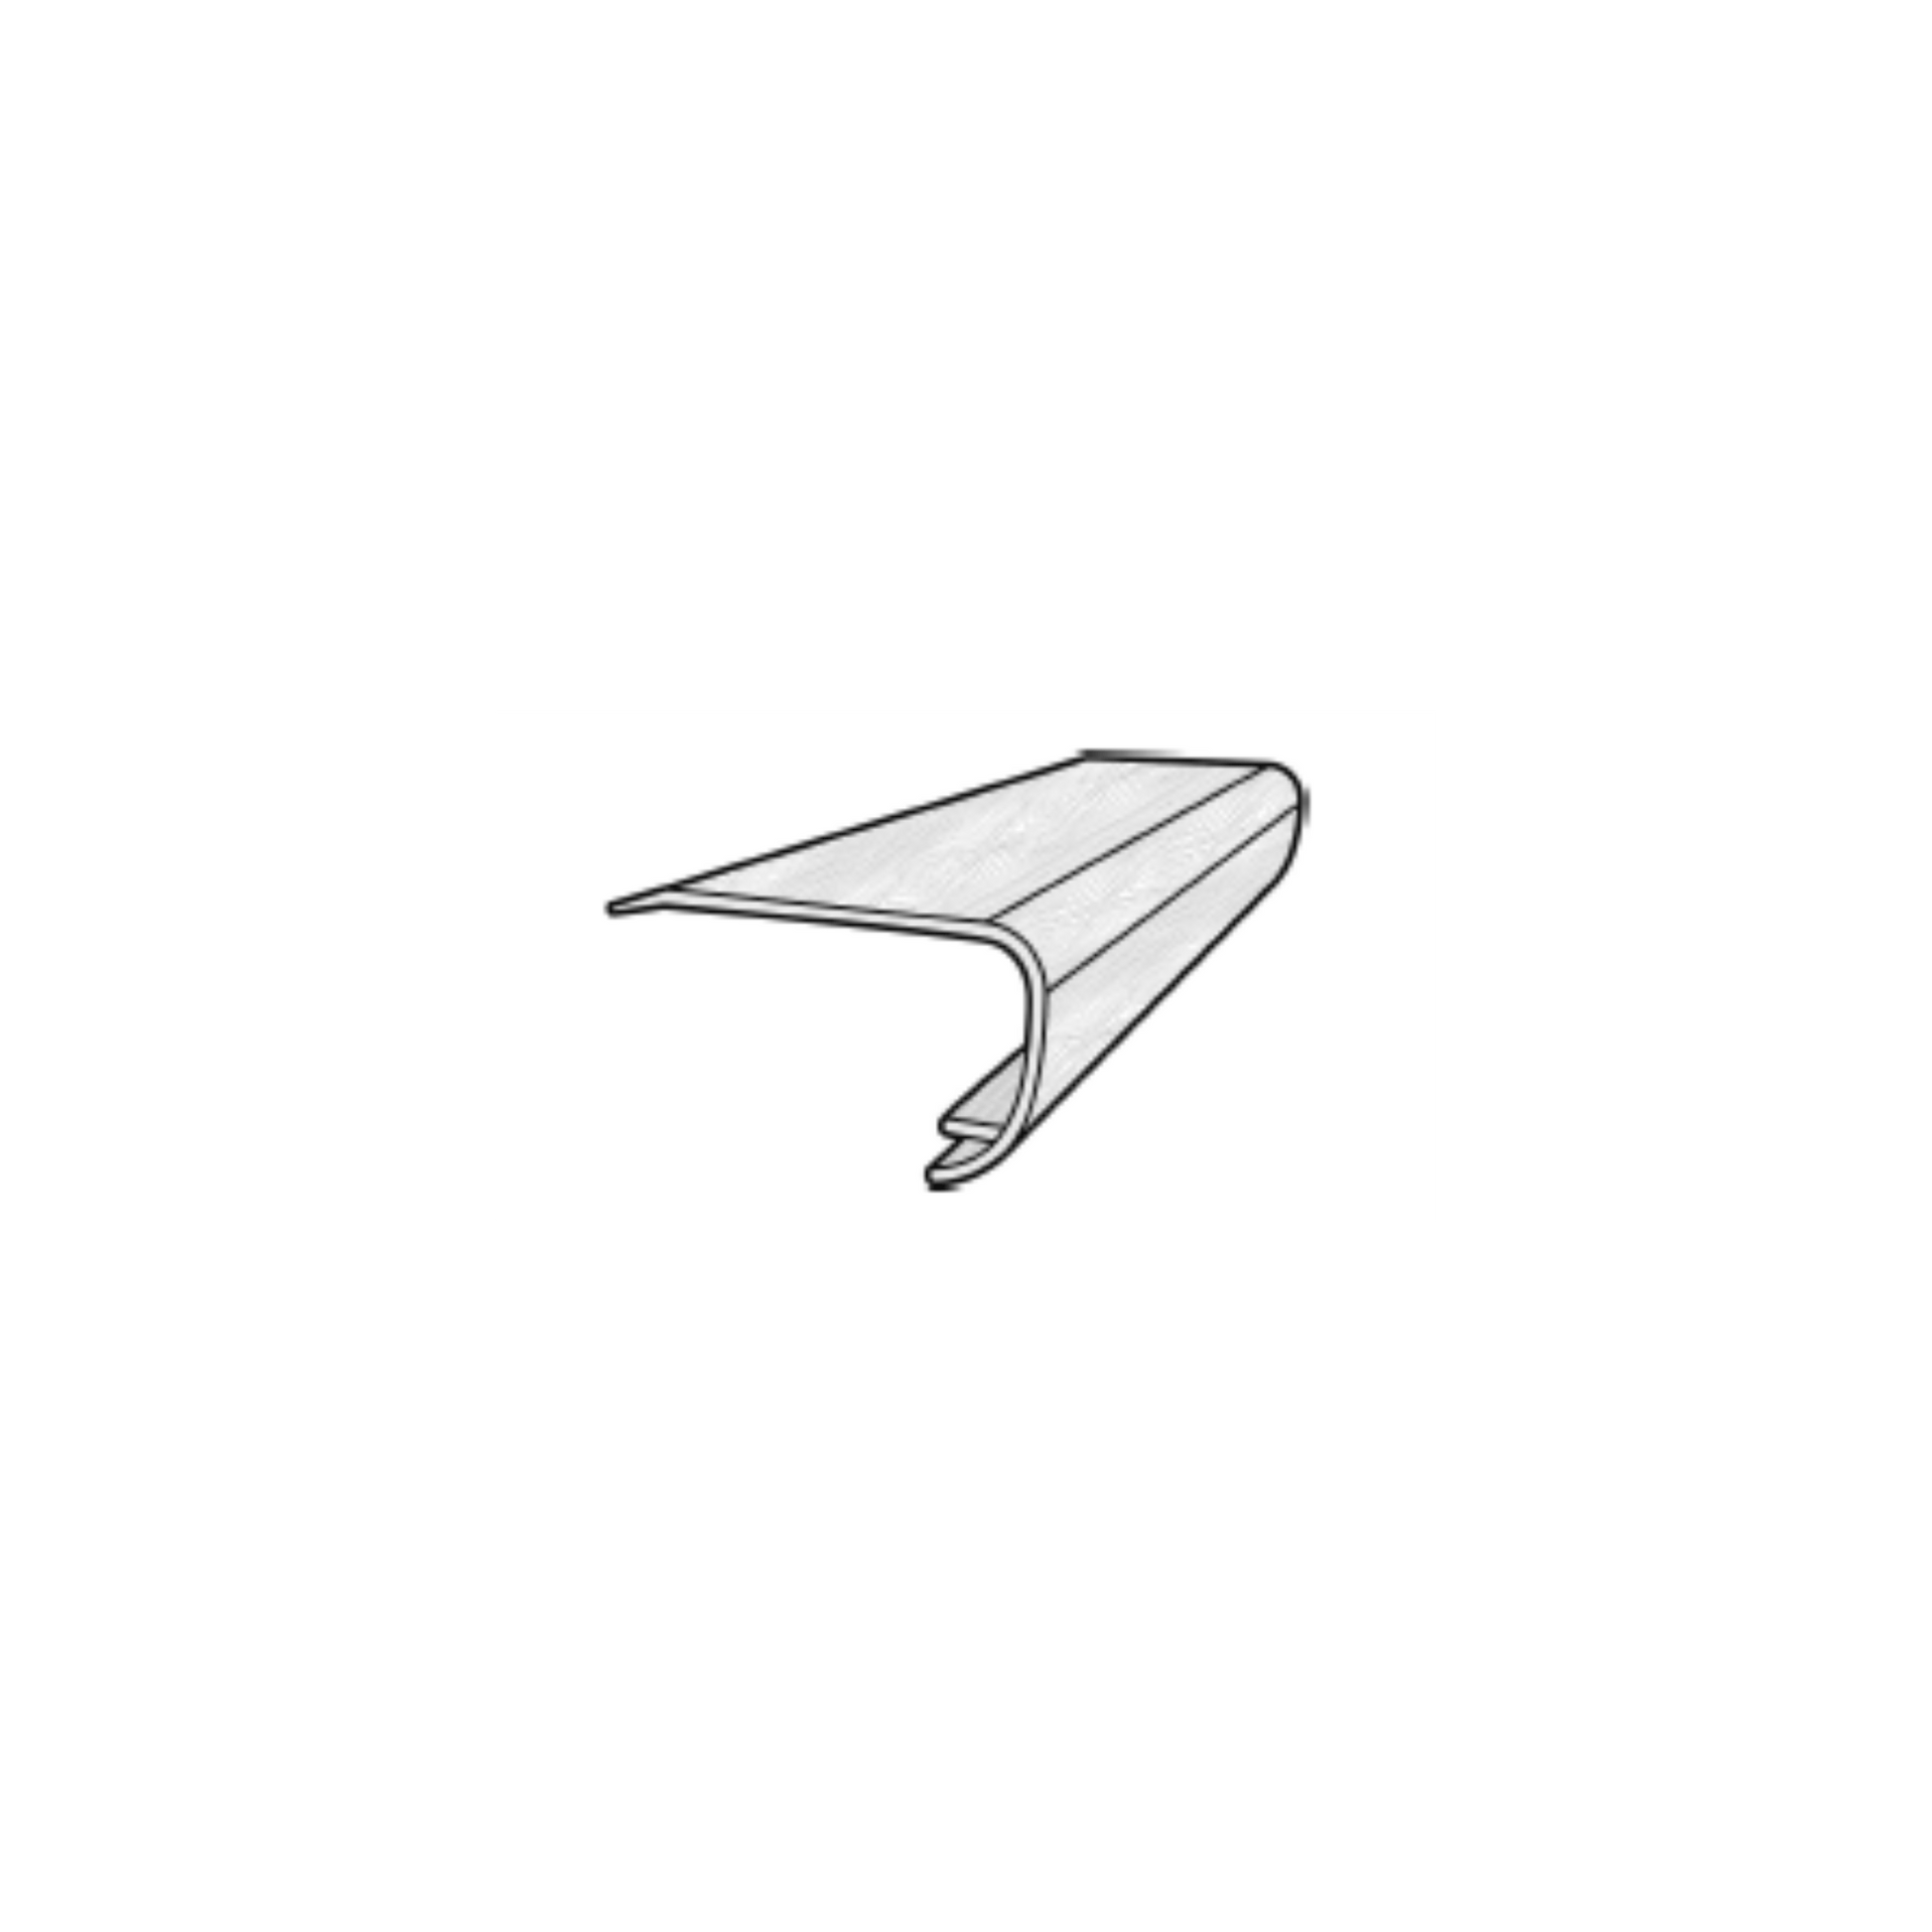 Accessory MSI - Cyrus - Sandino - Overlap Stair Nose MSI